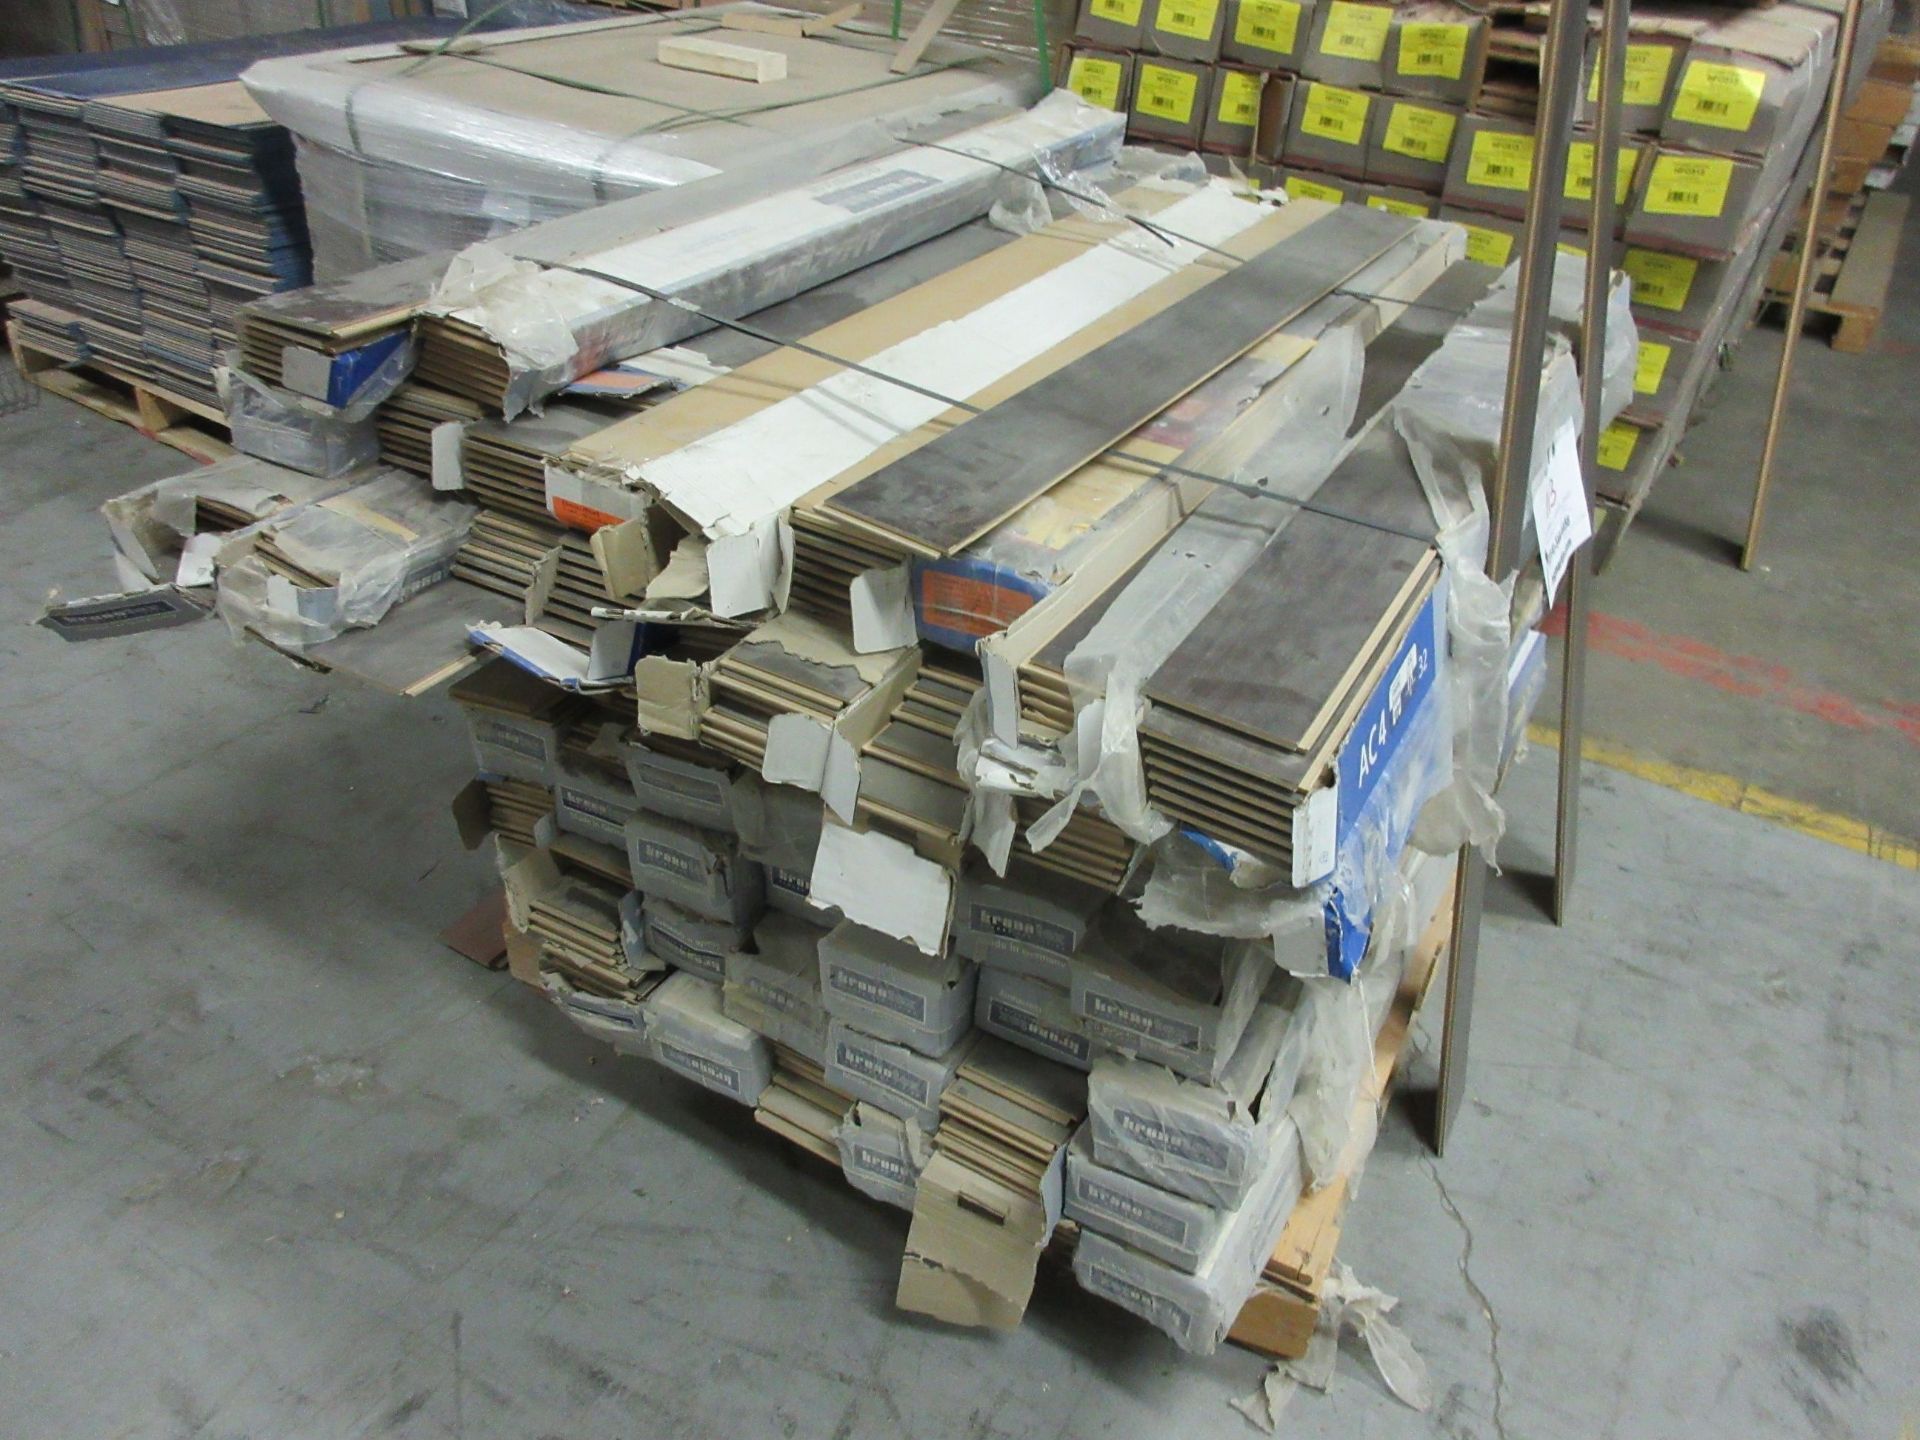 Laminate flooring (surabaya oak) 7 pieces/box, 11.75 sq. ft per box (40 boxes) - Image 3 of 5